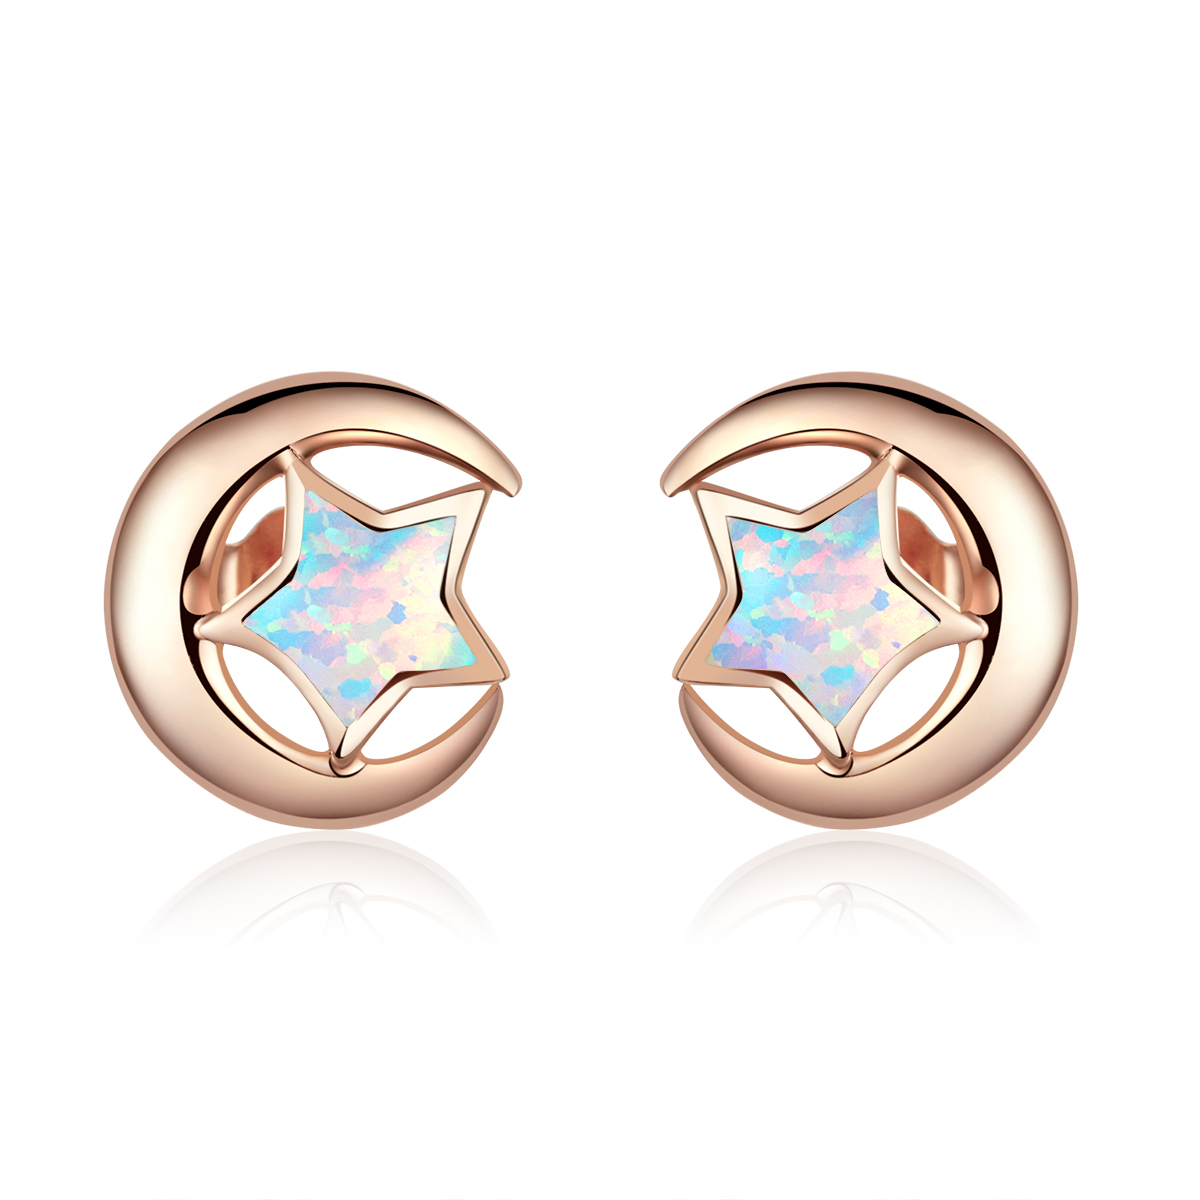 pandora style opal moon stud earrings sce816 c